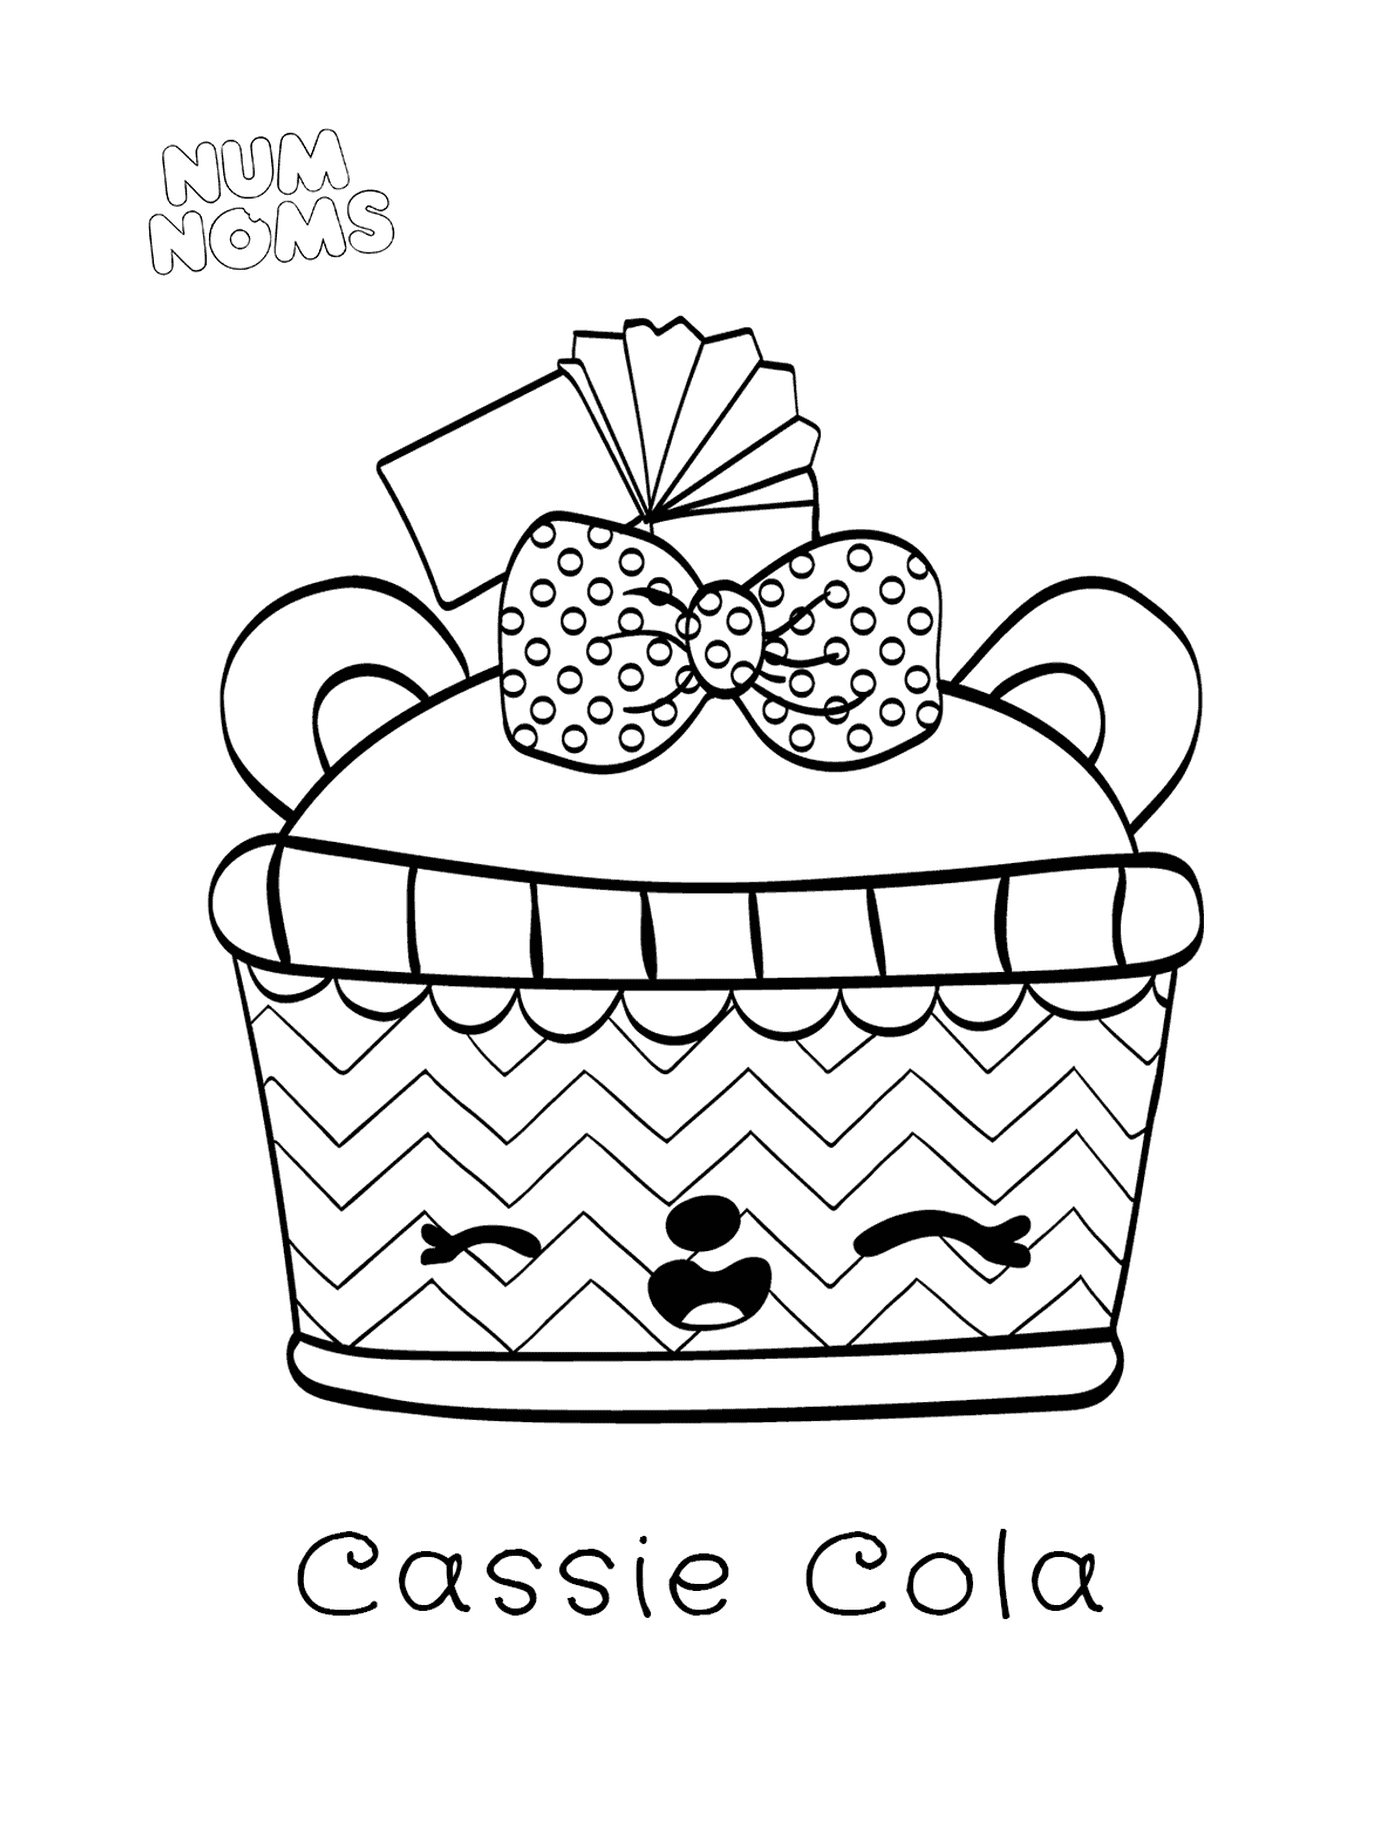  Färbung Seite Num Namen Cassie Cola 